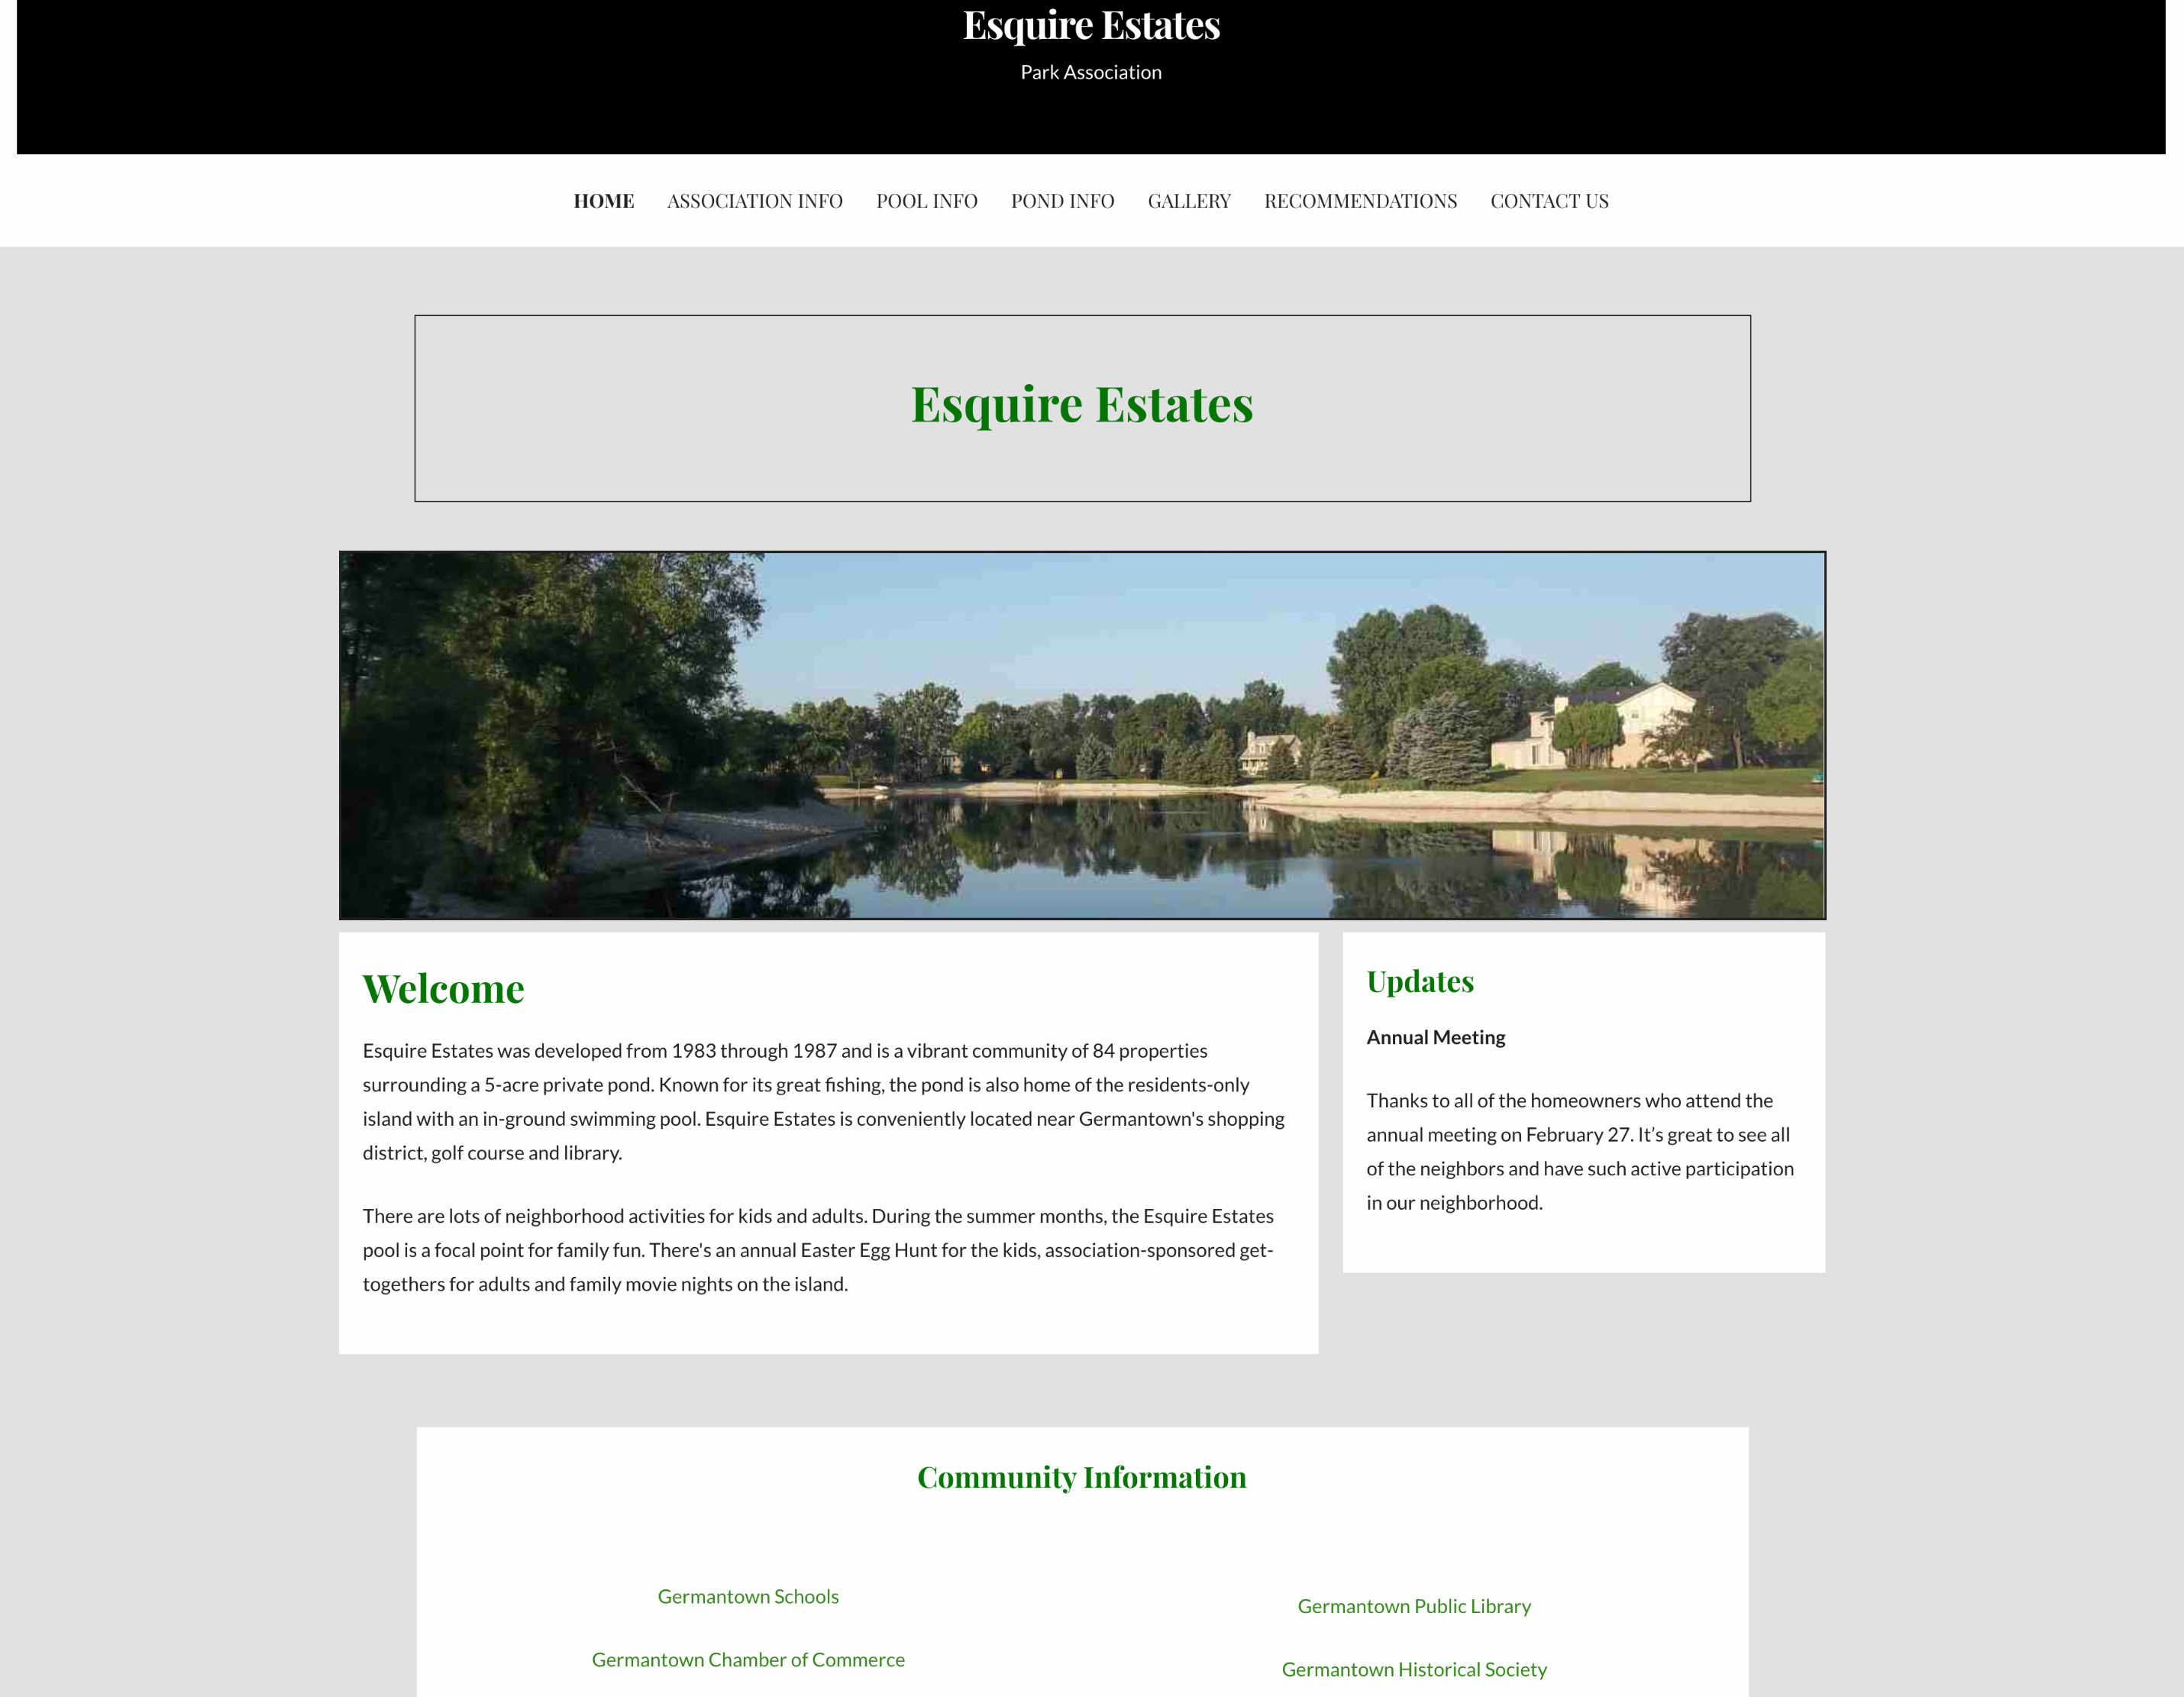 Image of Esquire Estates Website